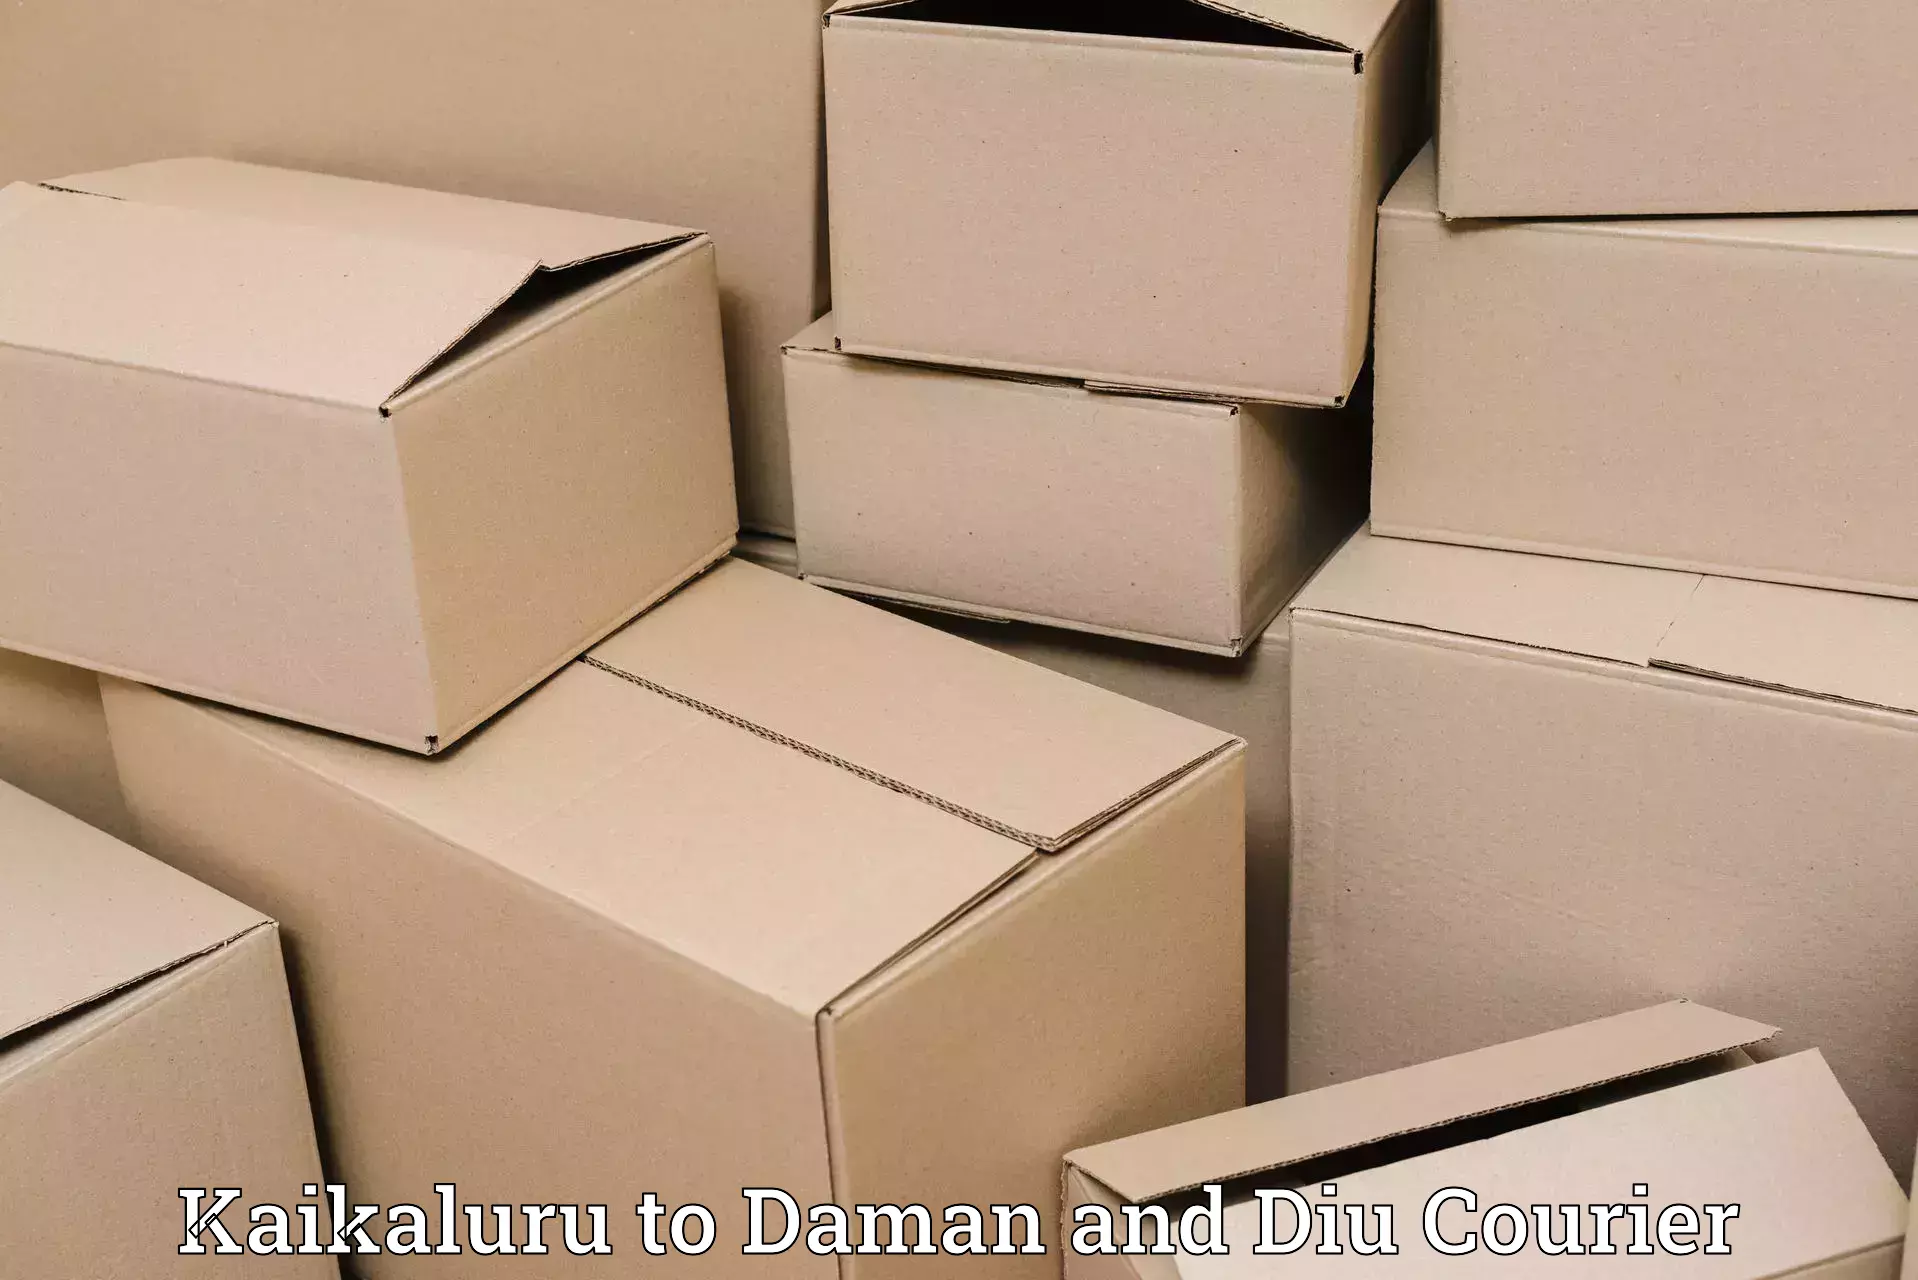 Express mail solutions Kaikaluru to Daman